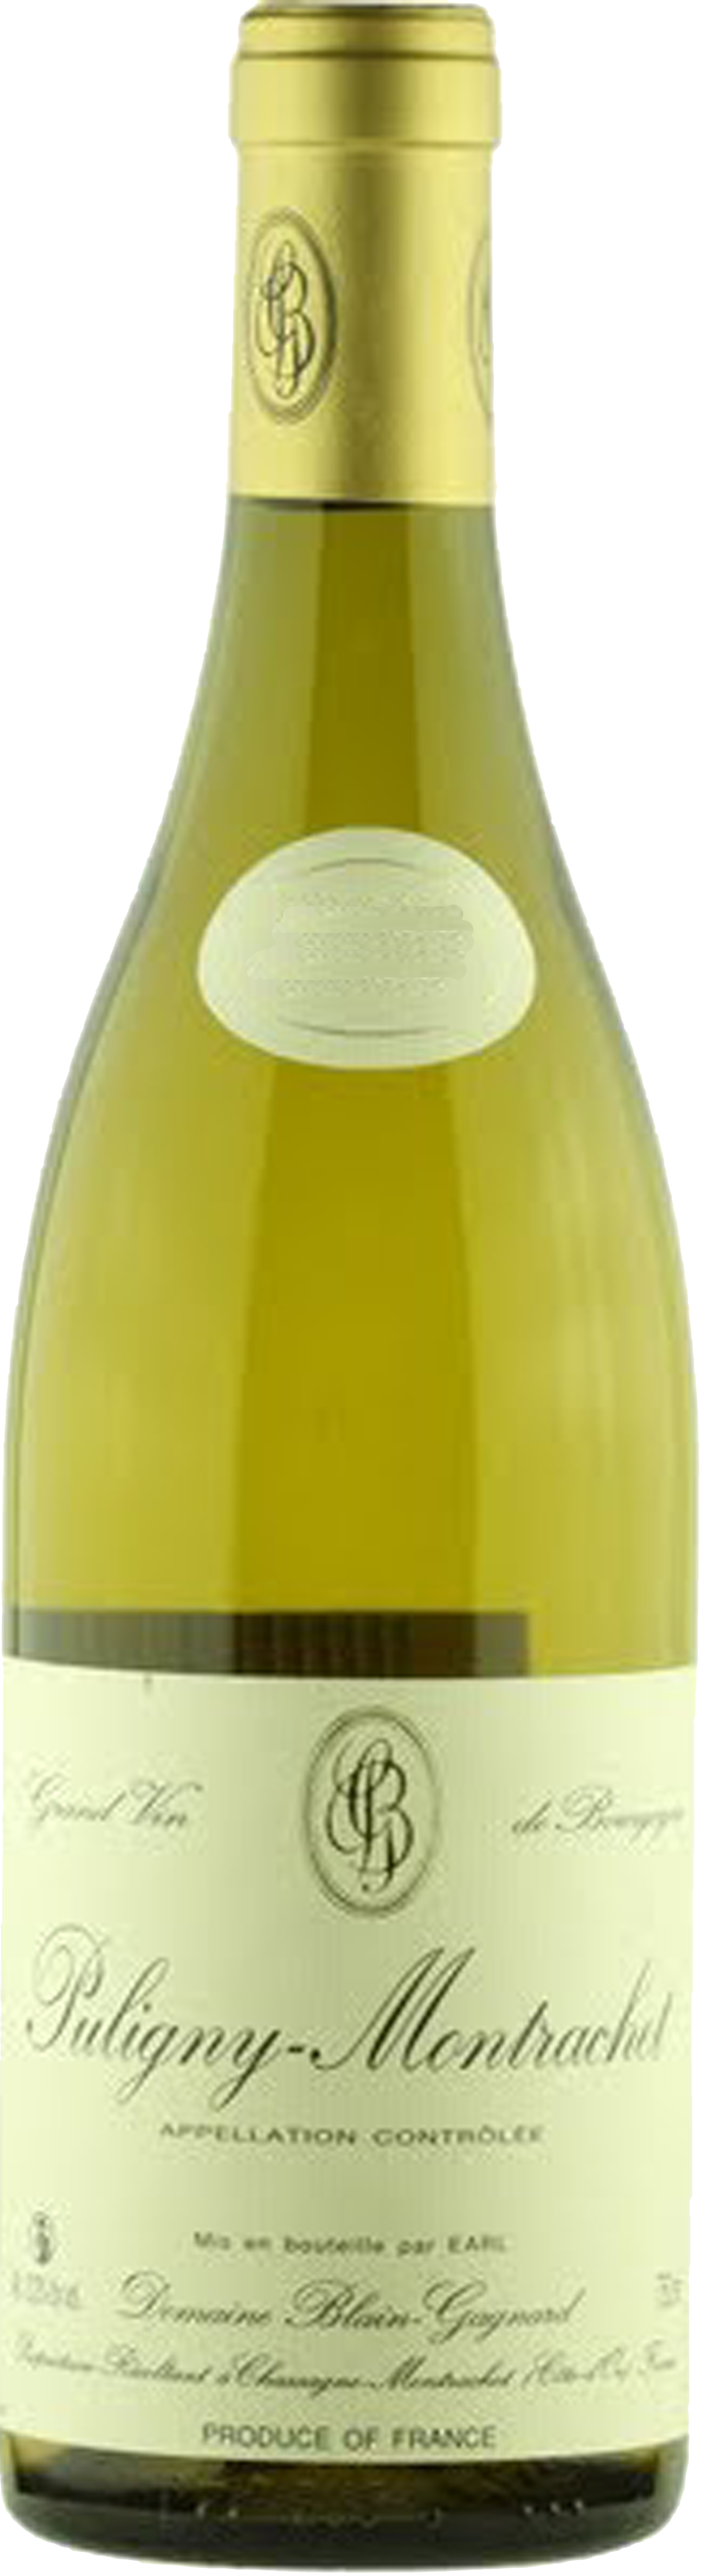 Bottle shot of 2012 Puligny Montrachet